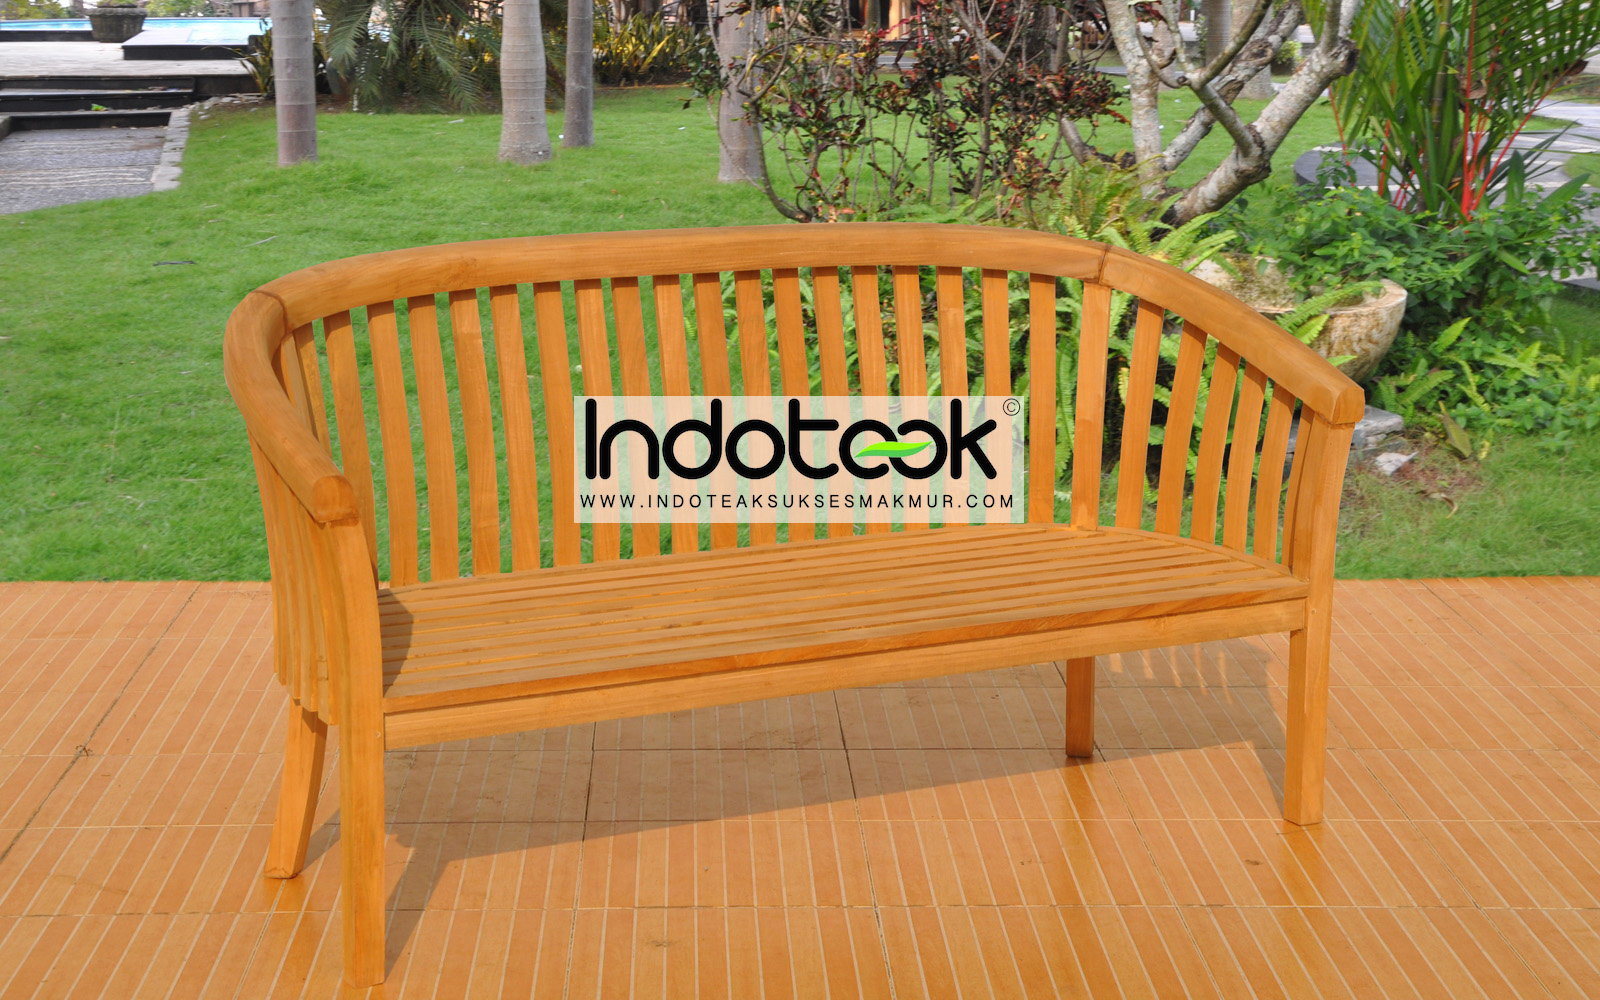 Wooden teak outdoor bench deep seating